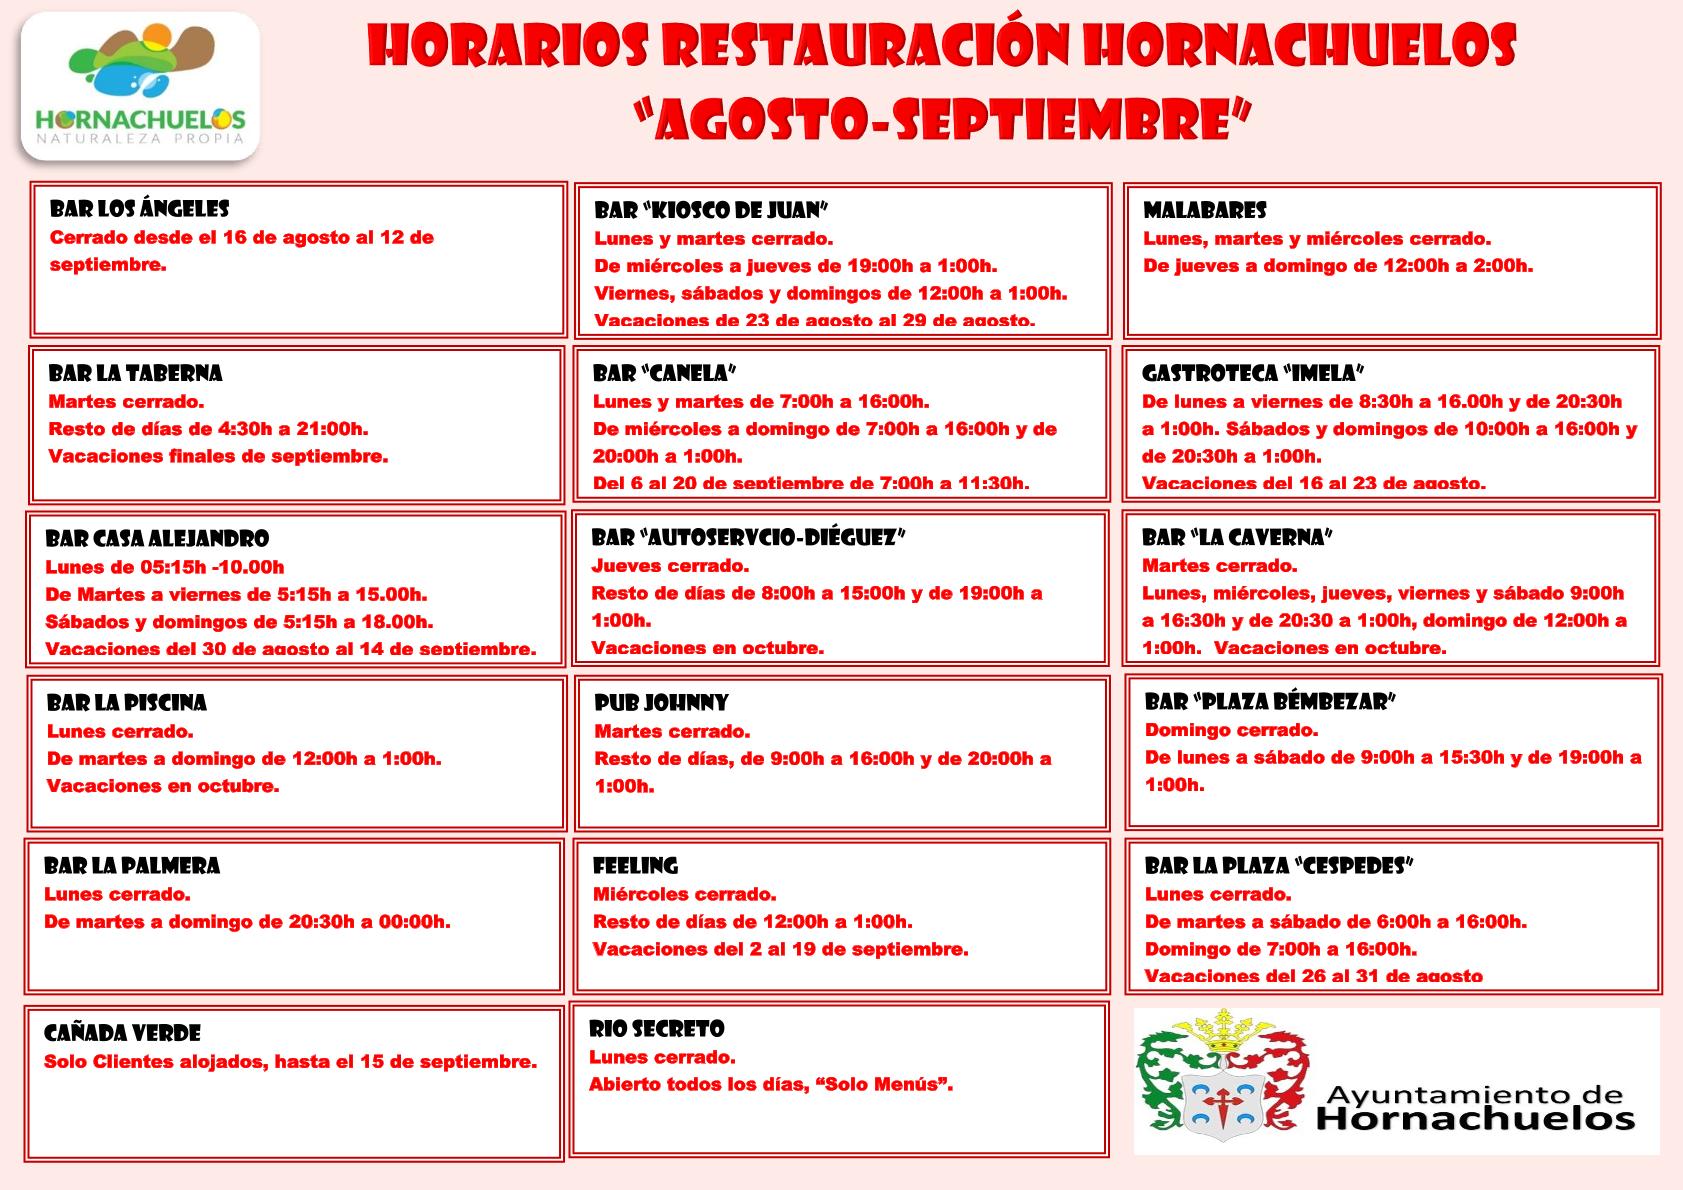 Horarios Restauración Hornachuelos agosto-septiembre